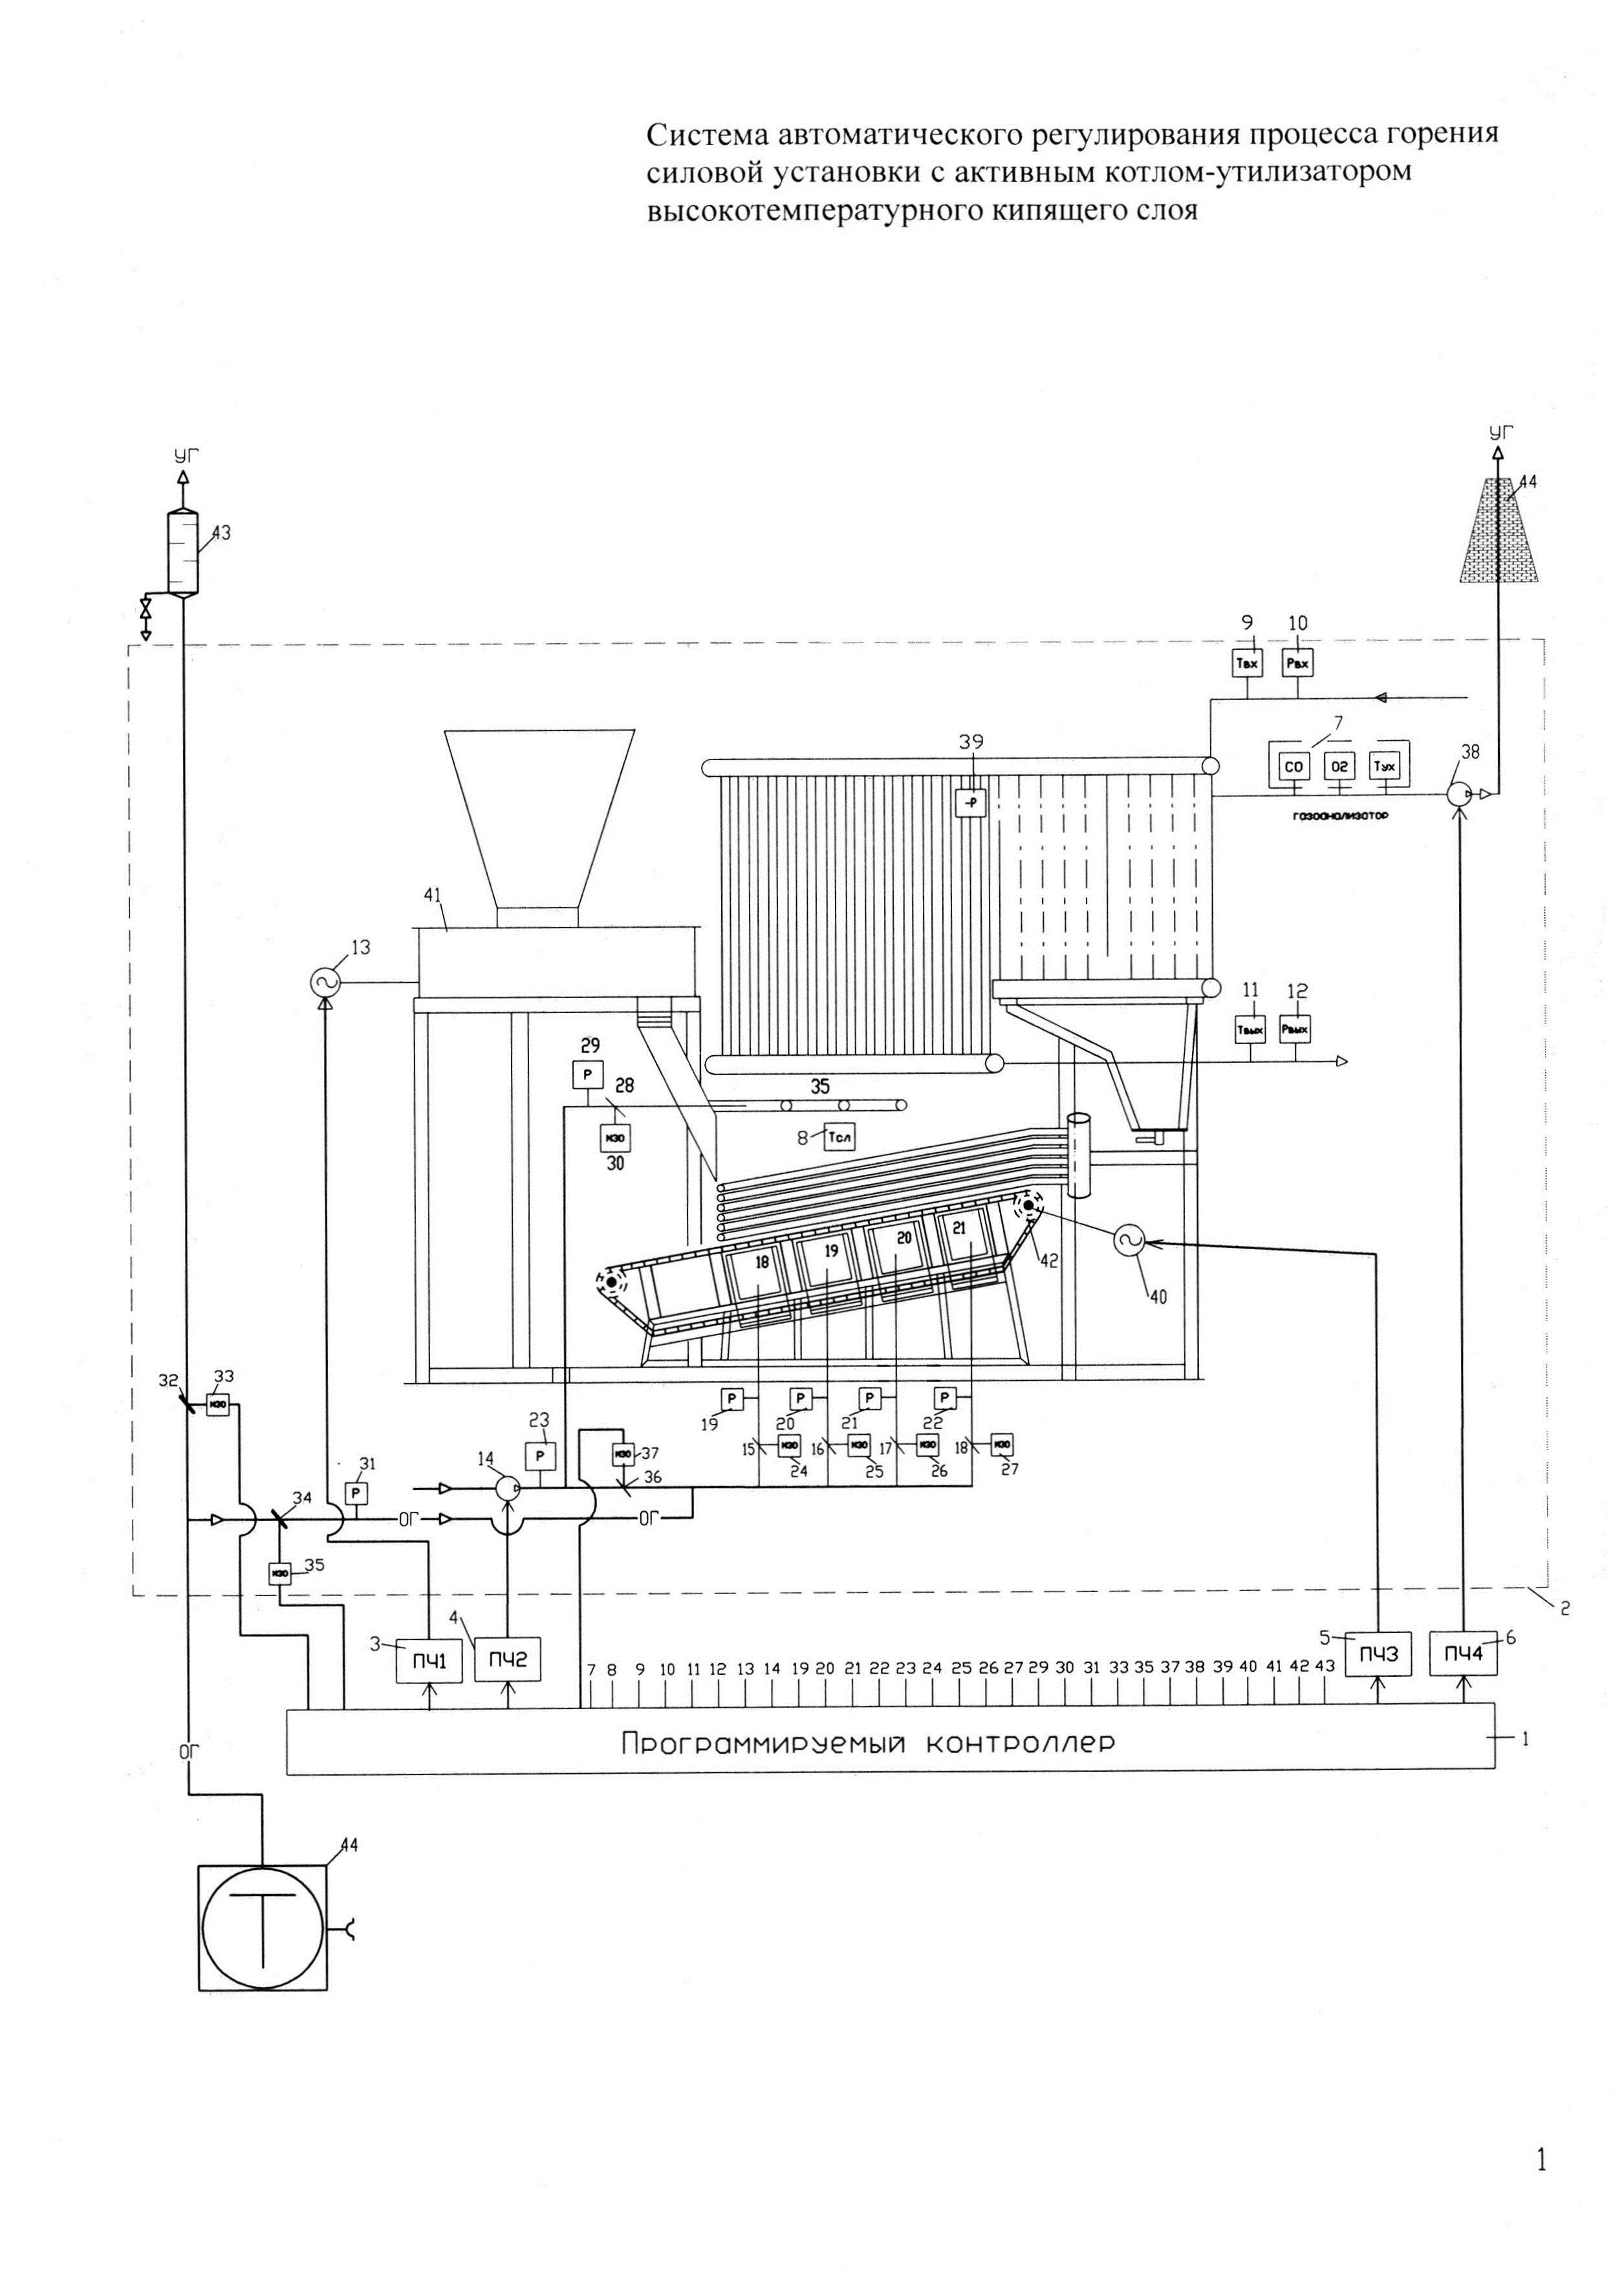 Система автоматического регулирования процесса горения силовой установки с активным котлом-утилизатором высокотемпературного кипящего слоя